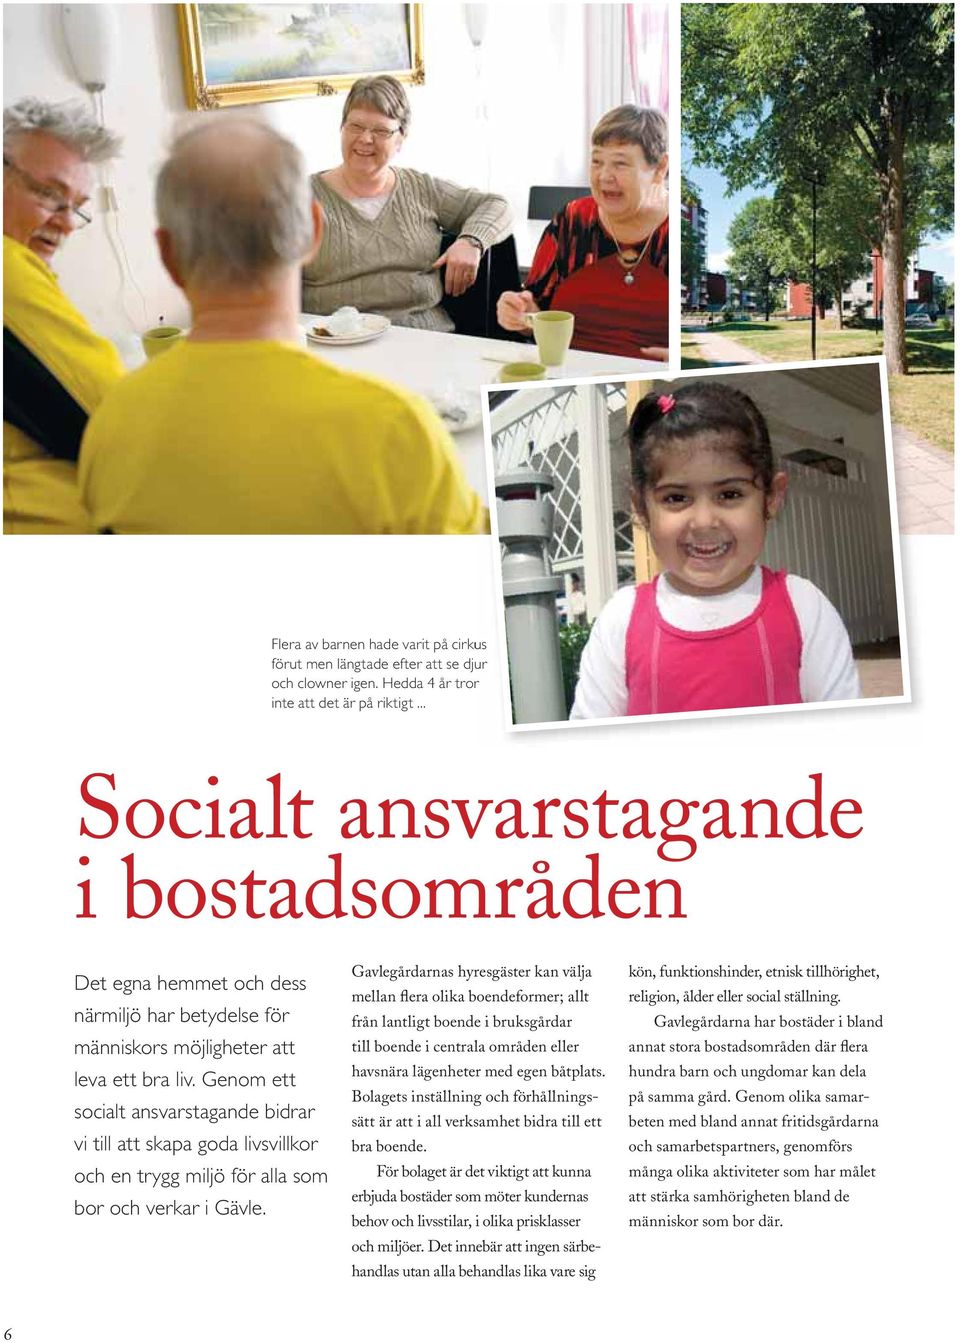 Genom ett socialt ansvarstagande bidrar vi till att skapa goda livsvillkor och en trygg miljö för alla som bor och verkar i Gävle.